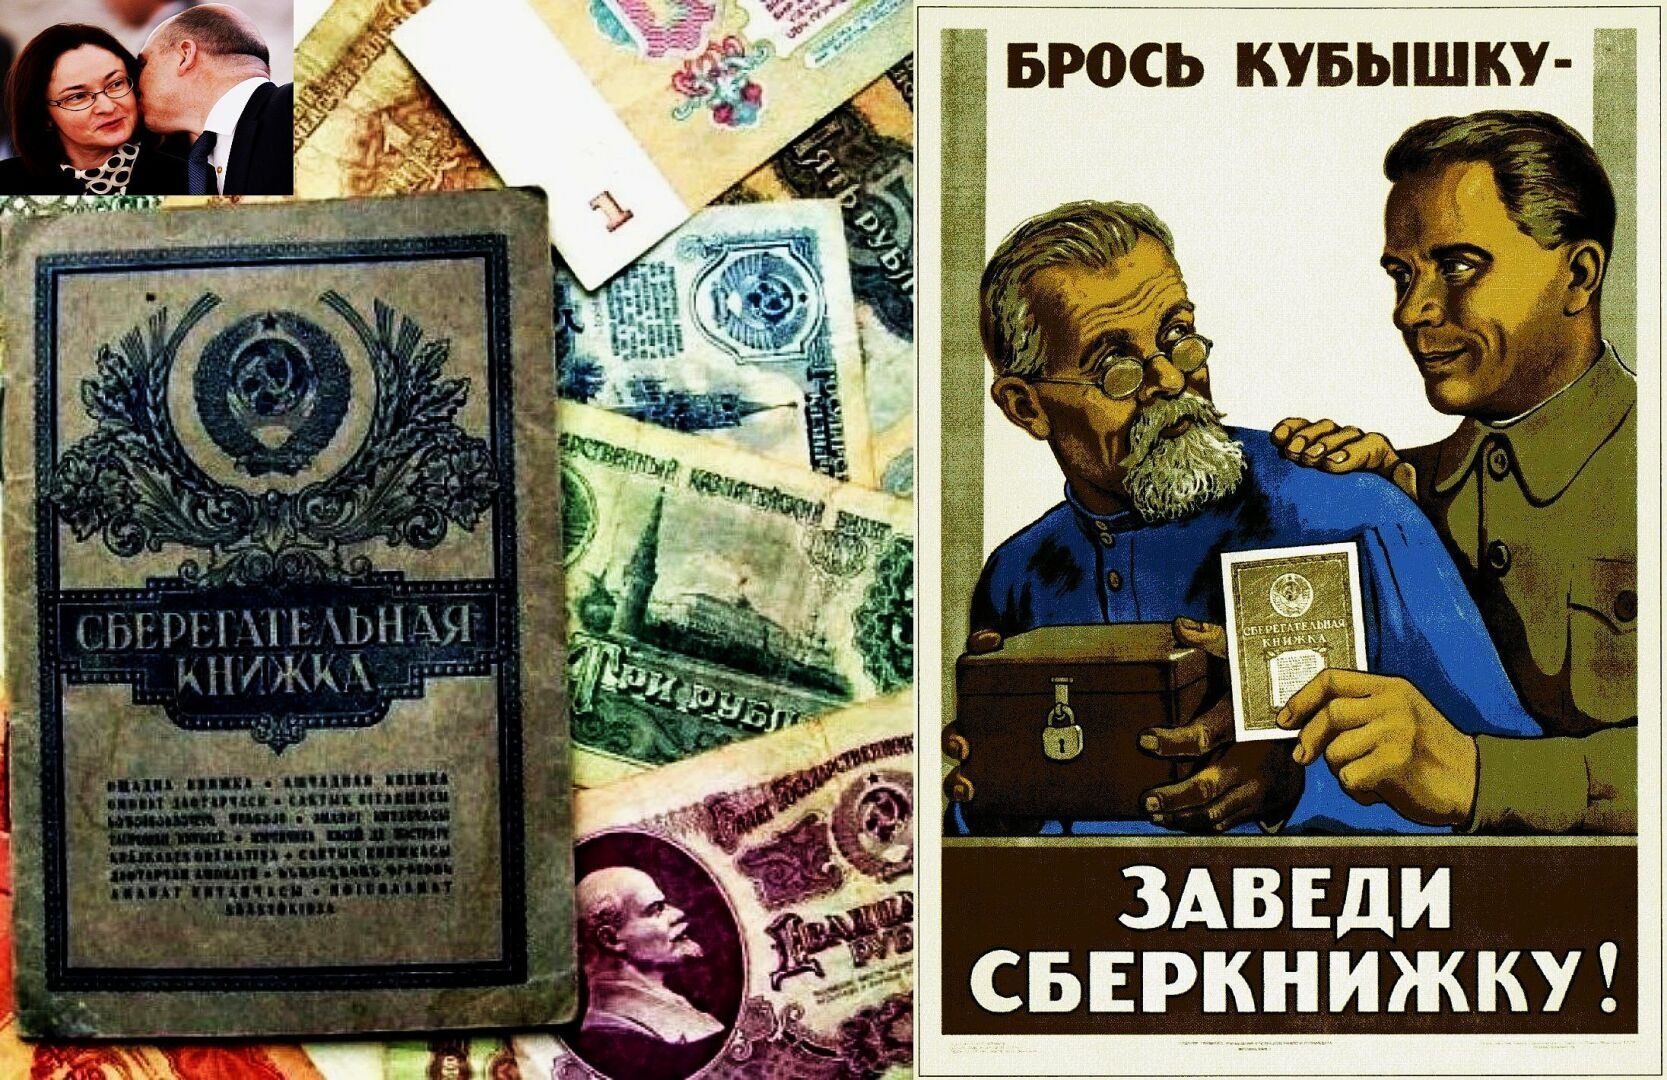 Долги СССР по сберкнижкам: 1 рубль СССР стоит 100 современных рублей сегодня, когда государство вернет долги народу